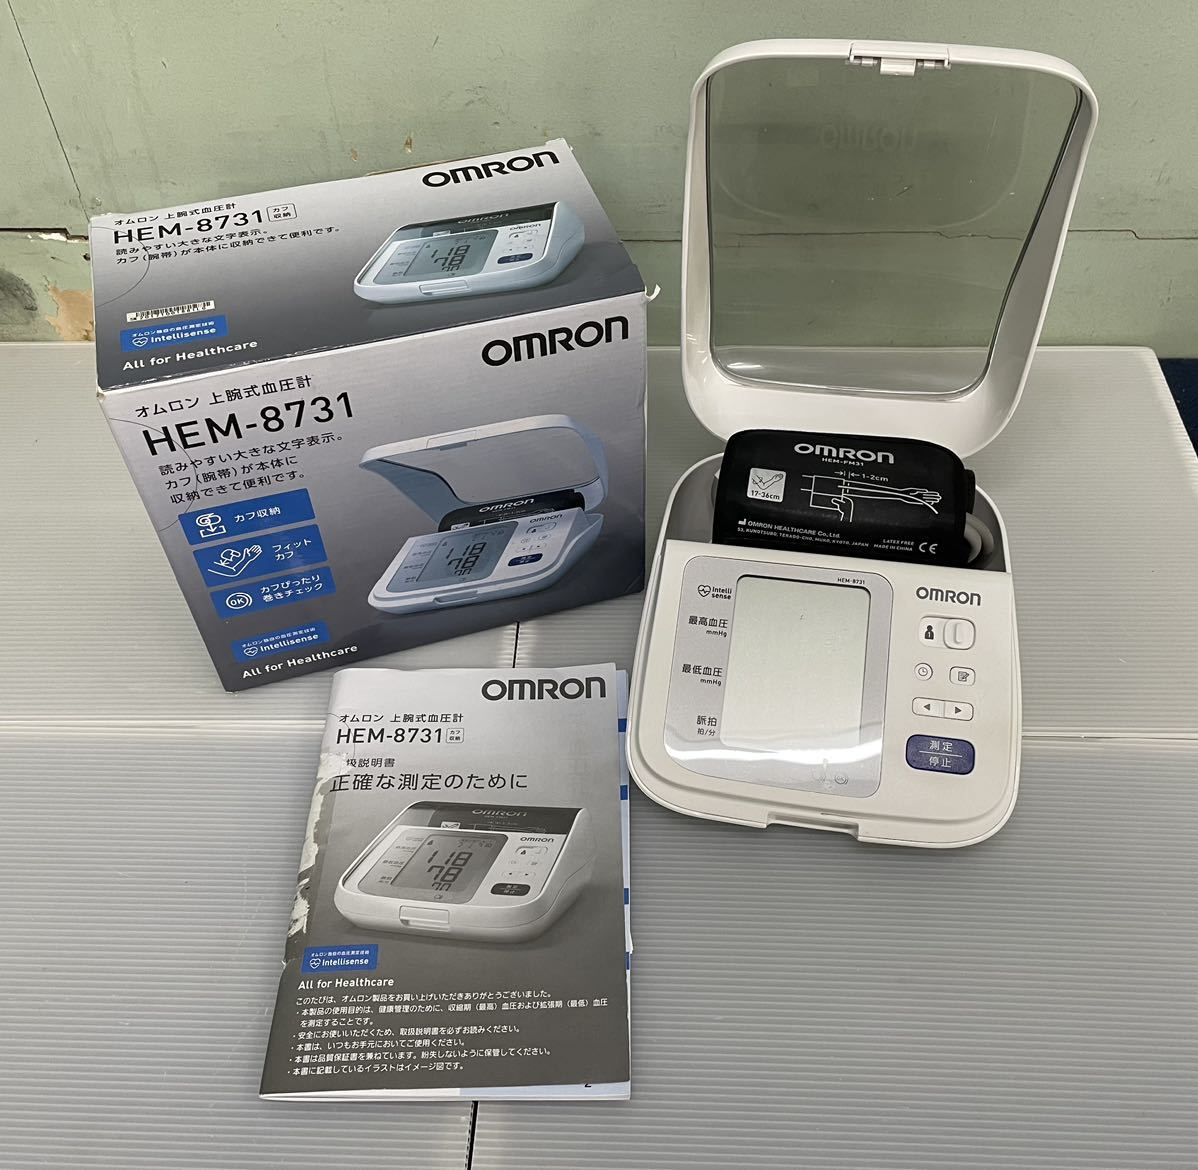 オムロン OMRON 上腕式血圧計 HEM-8731 自動血圧計(血圧計)｜売買され 